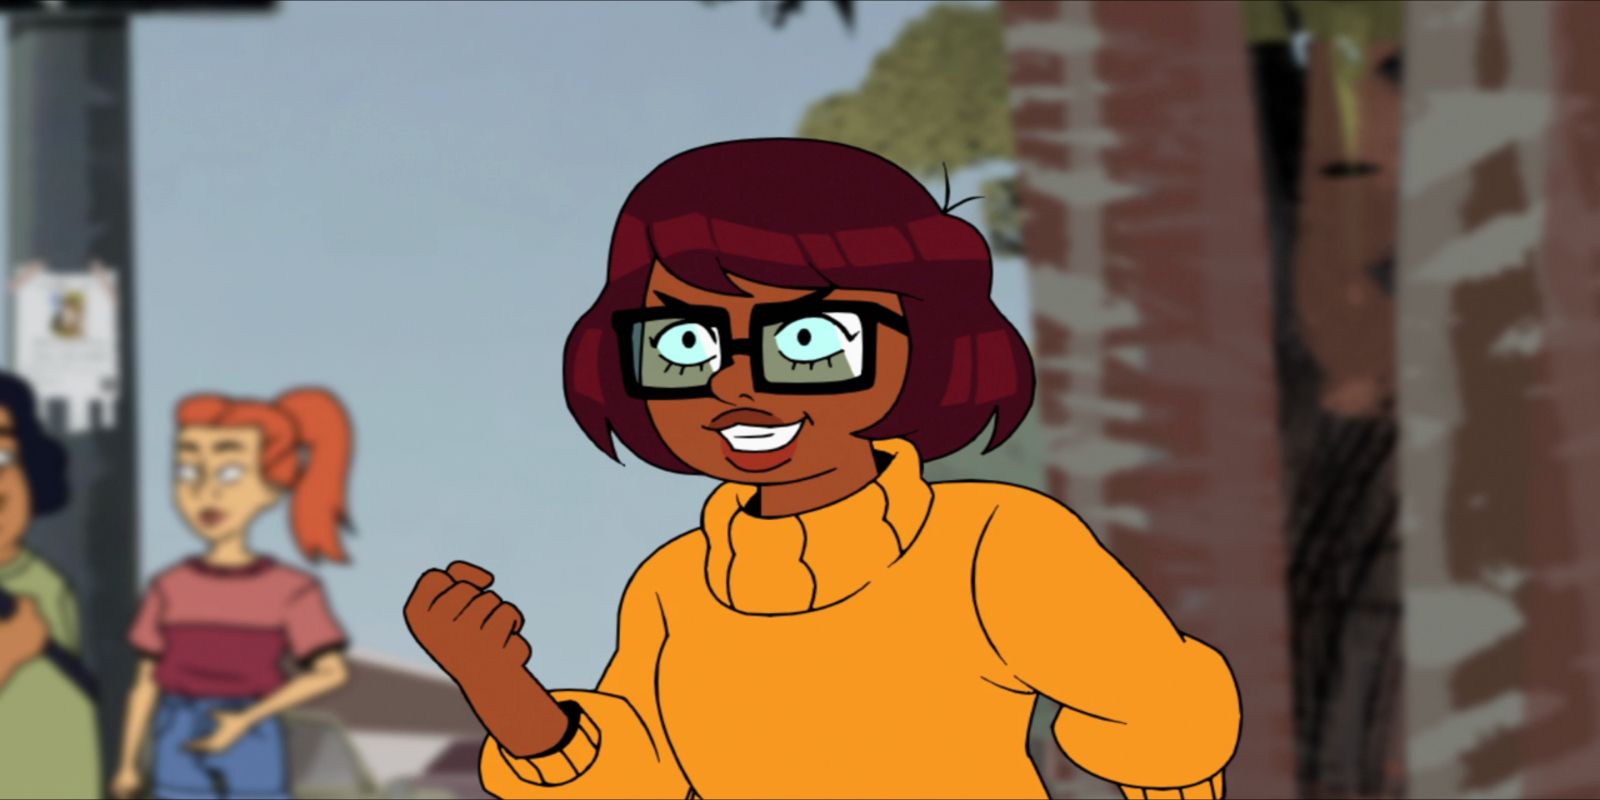 Apesar das polêmicas, 2ª temporada de 'Velma' já está em desenvolvimento -  CinePOP